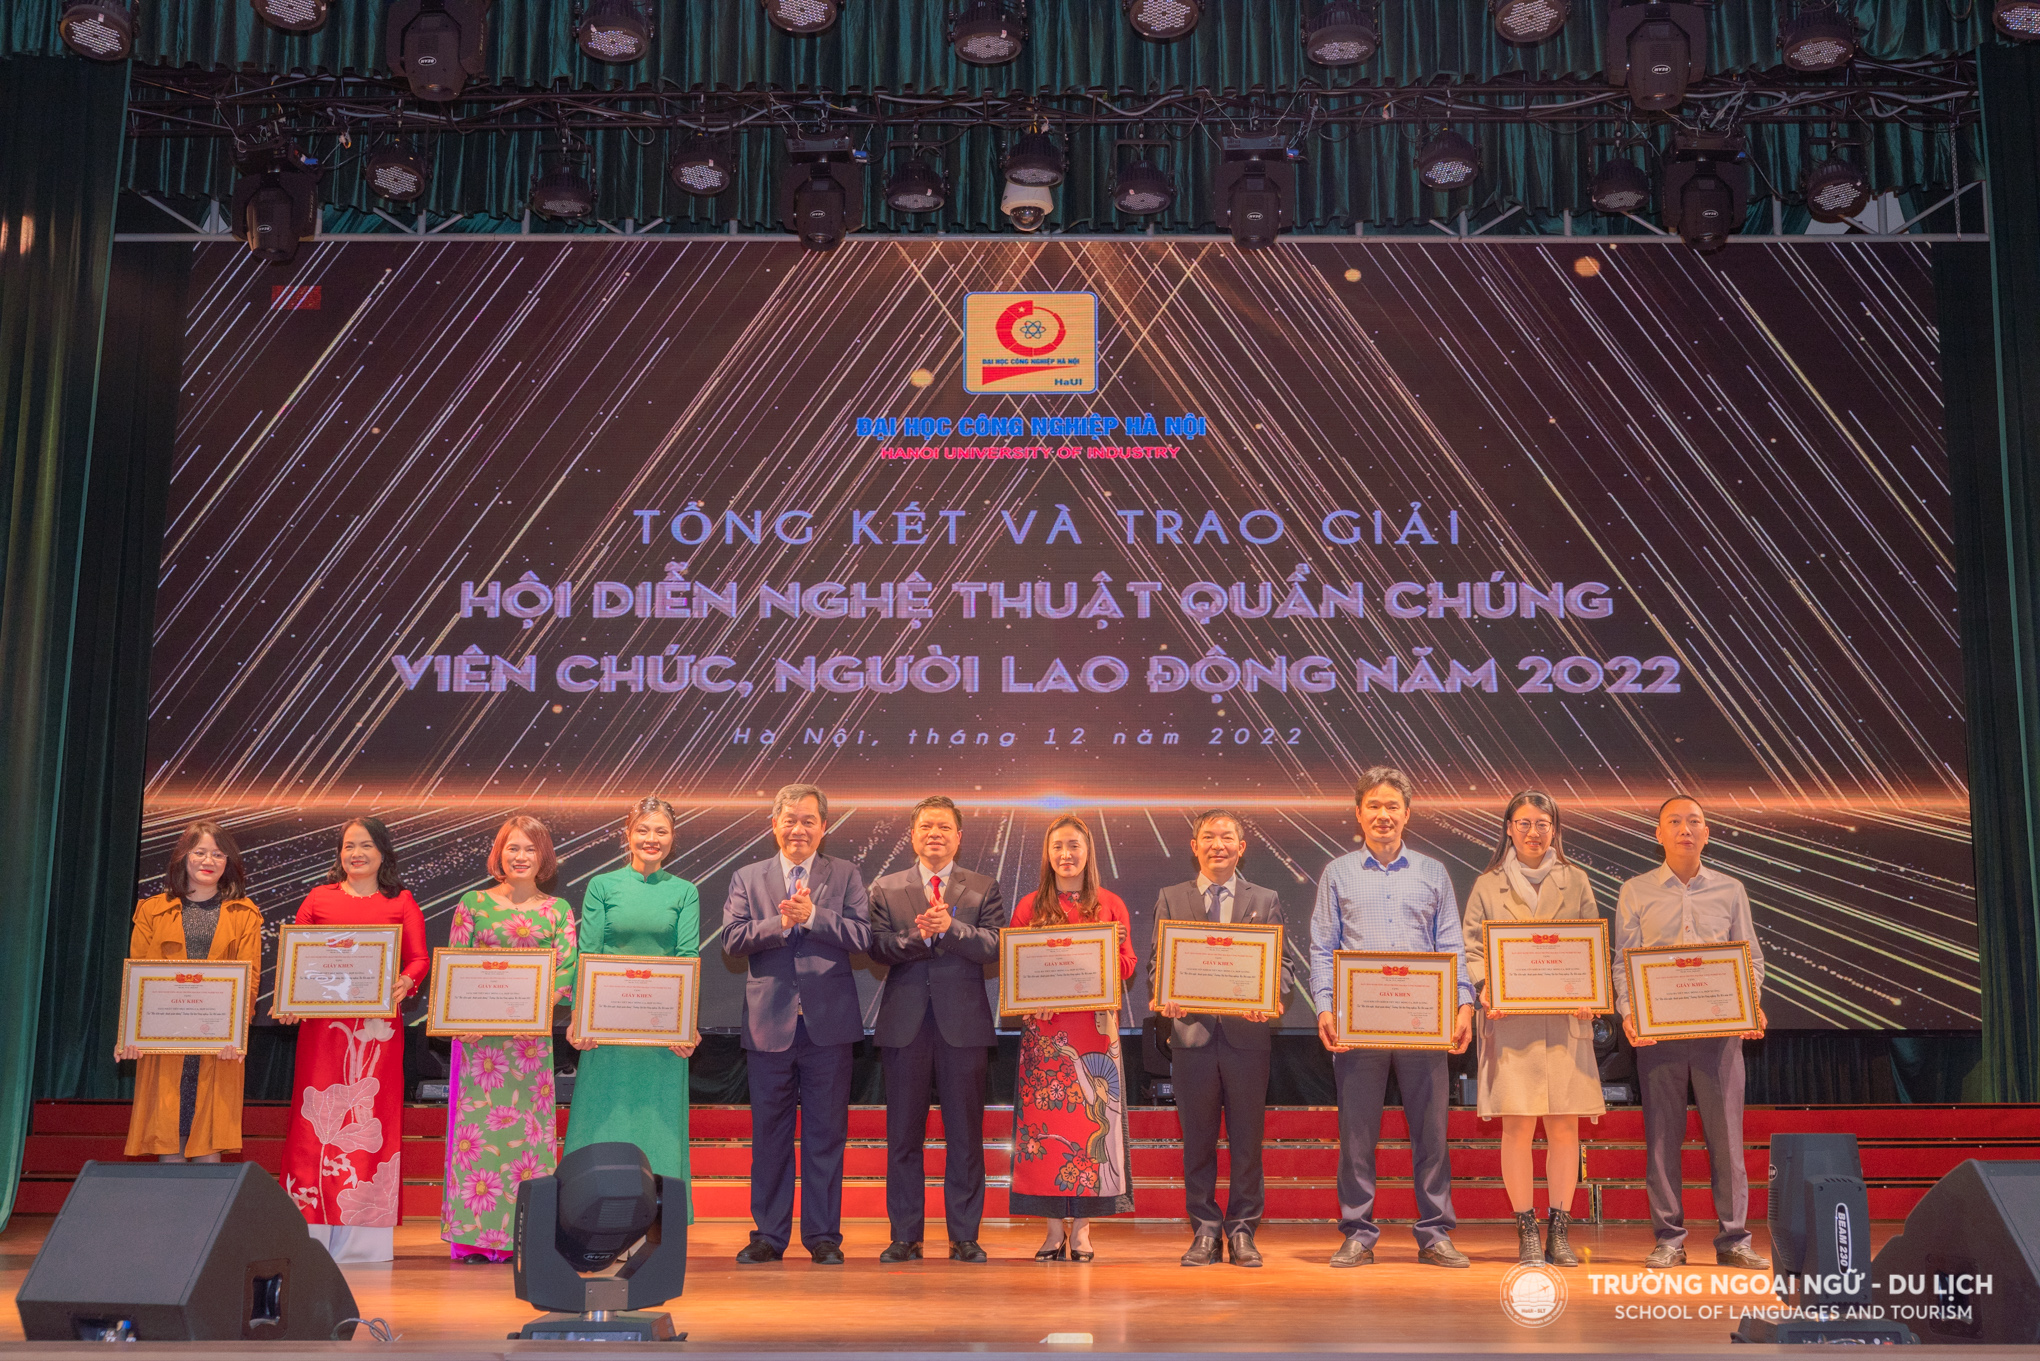 Trường Ngoại ngữ - Du lịch giành giải cao tại Hội diễn nghệ thuật quần chúng 2022